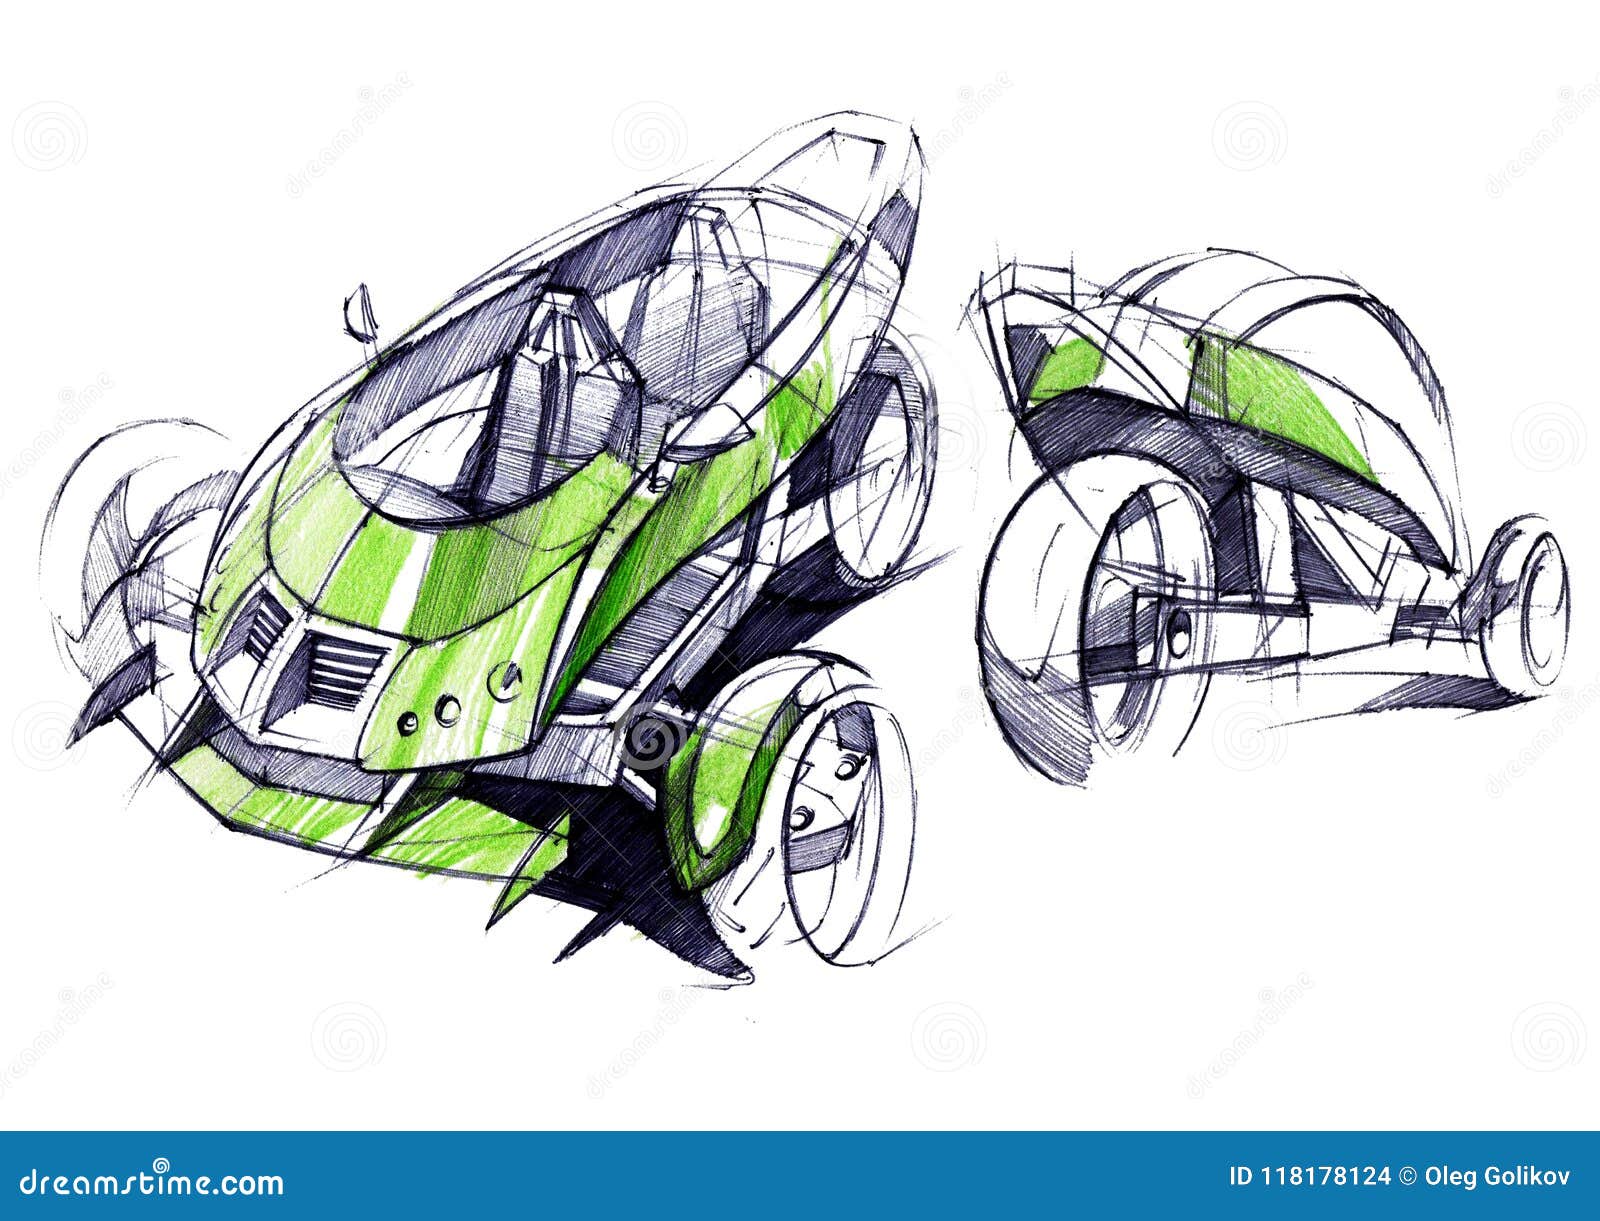 Course Car Design Tools  SPD Scuola Politecnica di Design